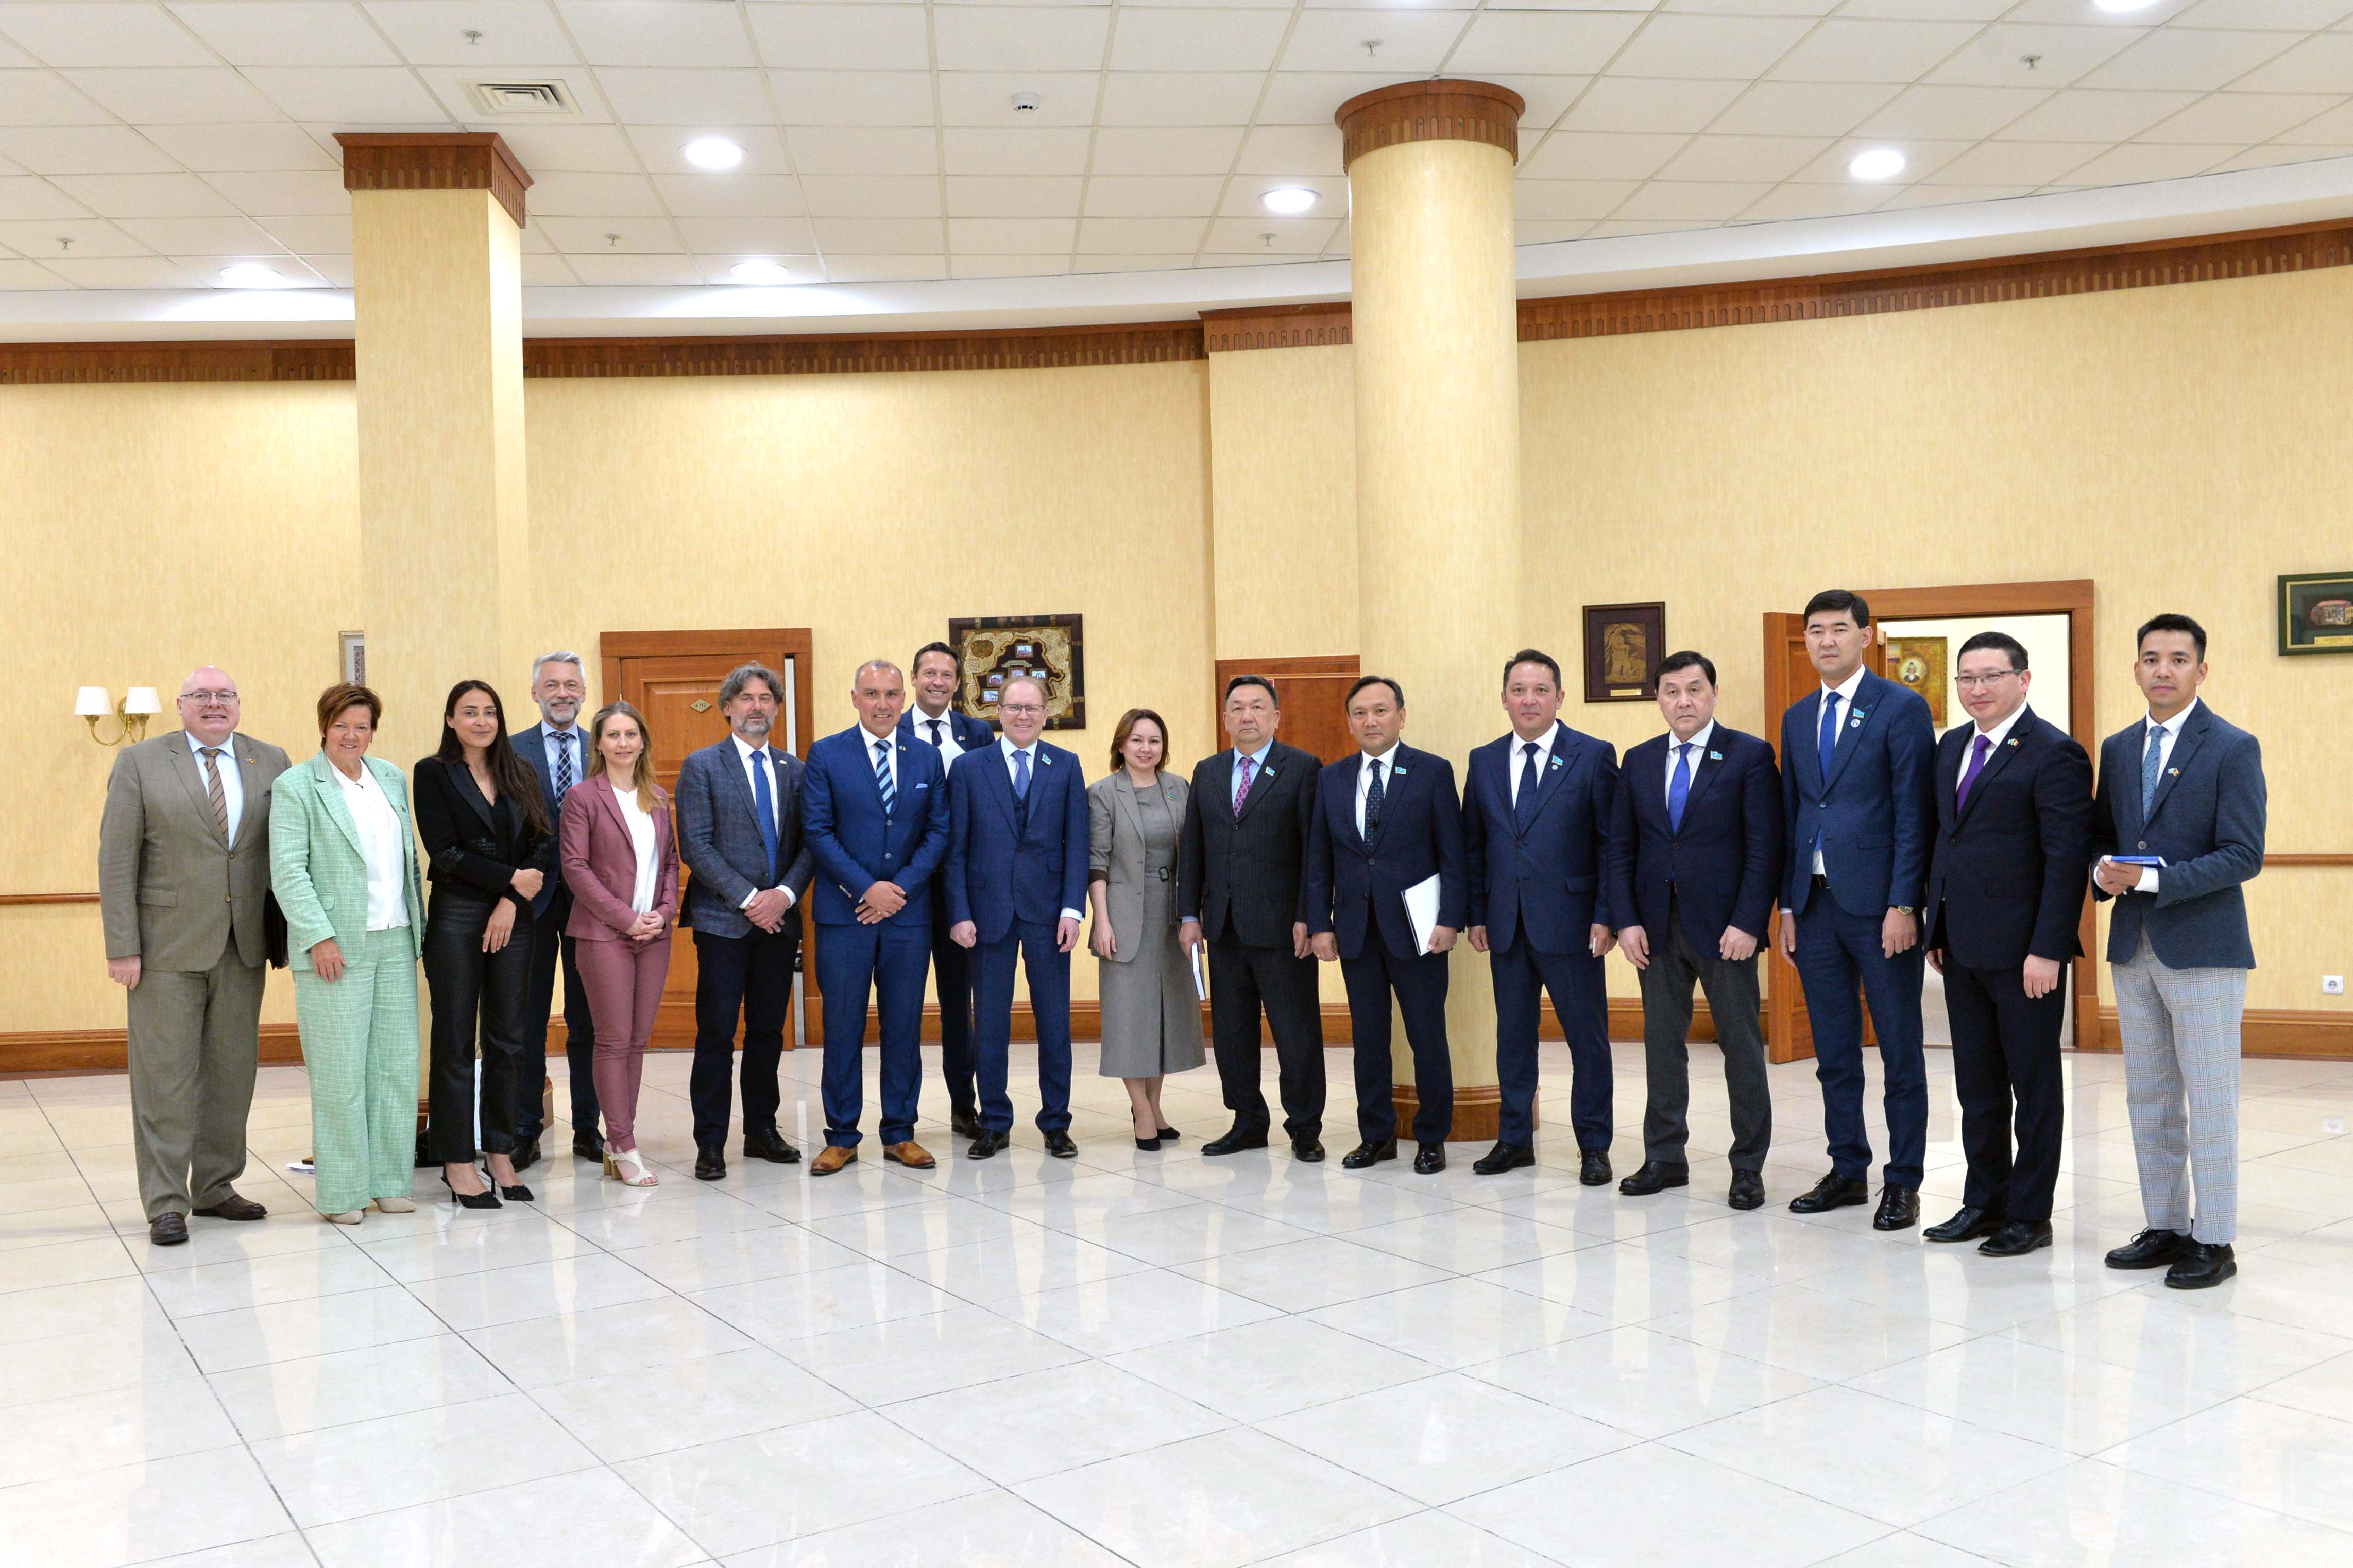 Сегодня мы во главе с заместителем Председателя Мажилиса Парламента Альбертом Рау встретились с депутатами Парламента Королевства Бельгии, прибывшими с визитом в Казахстан. 